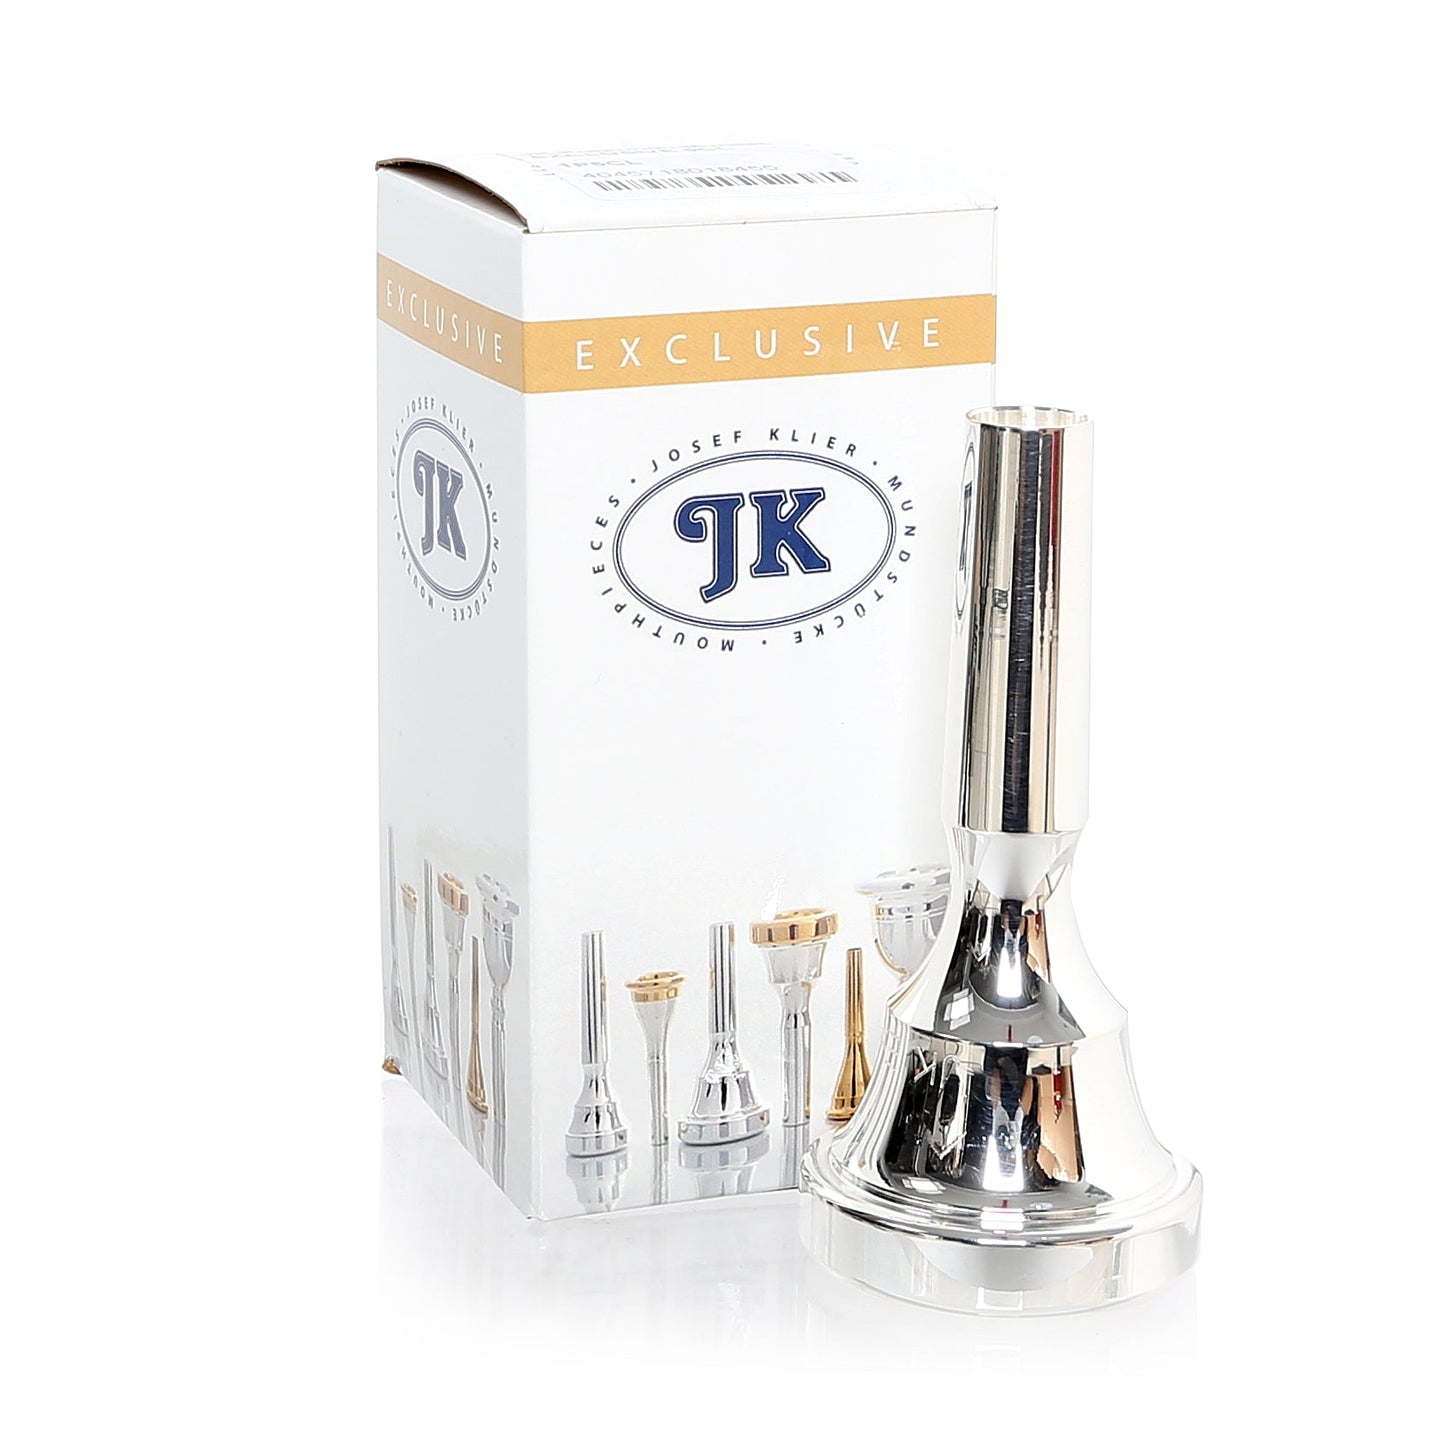 [CUSTOM] JK (Josef Klier) Exclusive Tenor/Bass Trombone Mouthpiece [Large Shank in Gold]